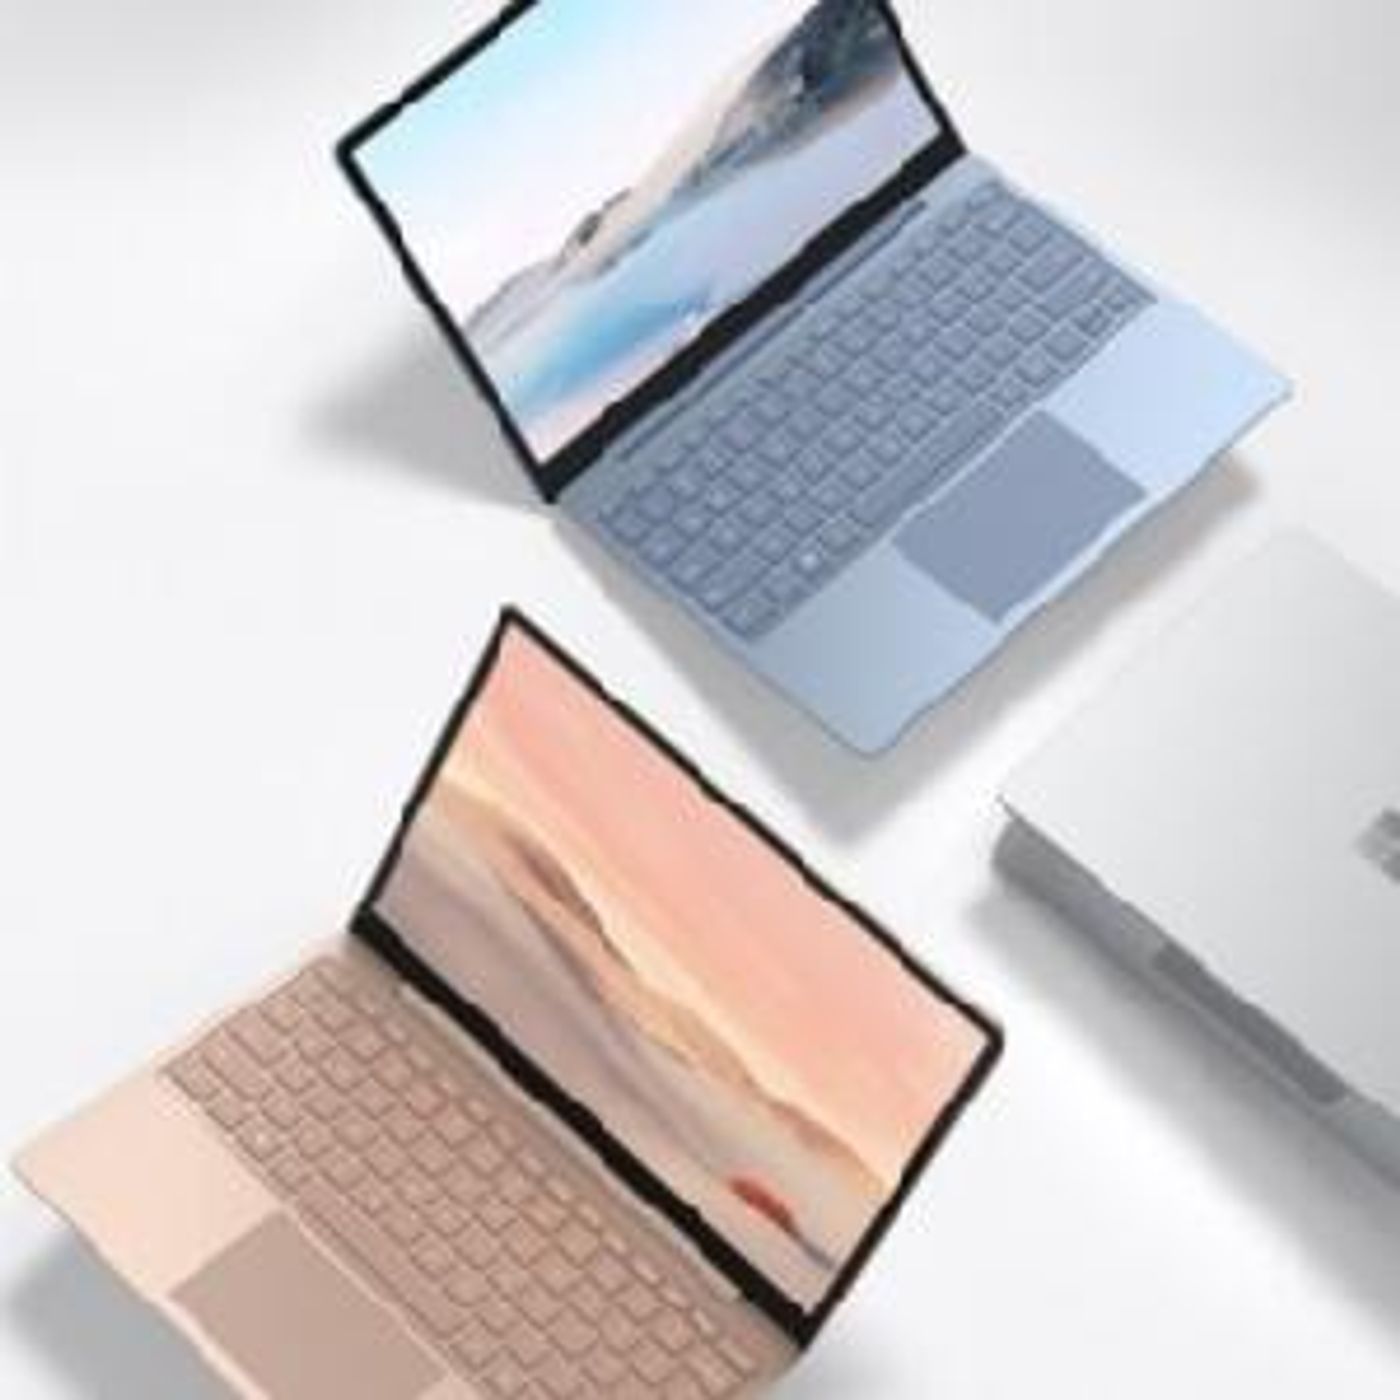 Surface Laptop Go la laptop barata de Microsoft ya disponible